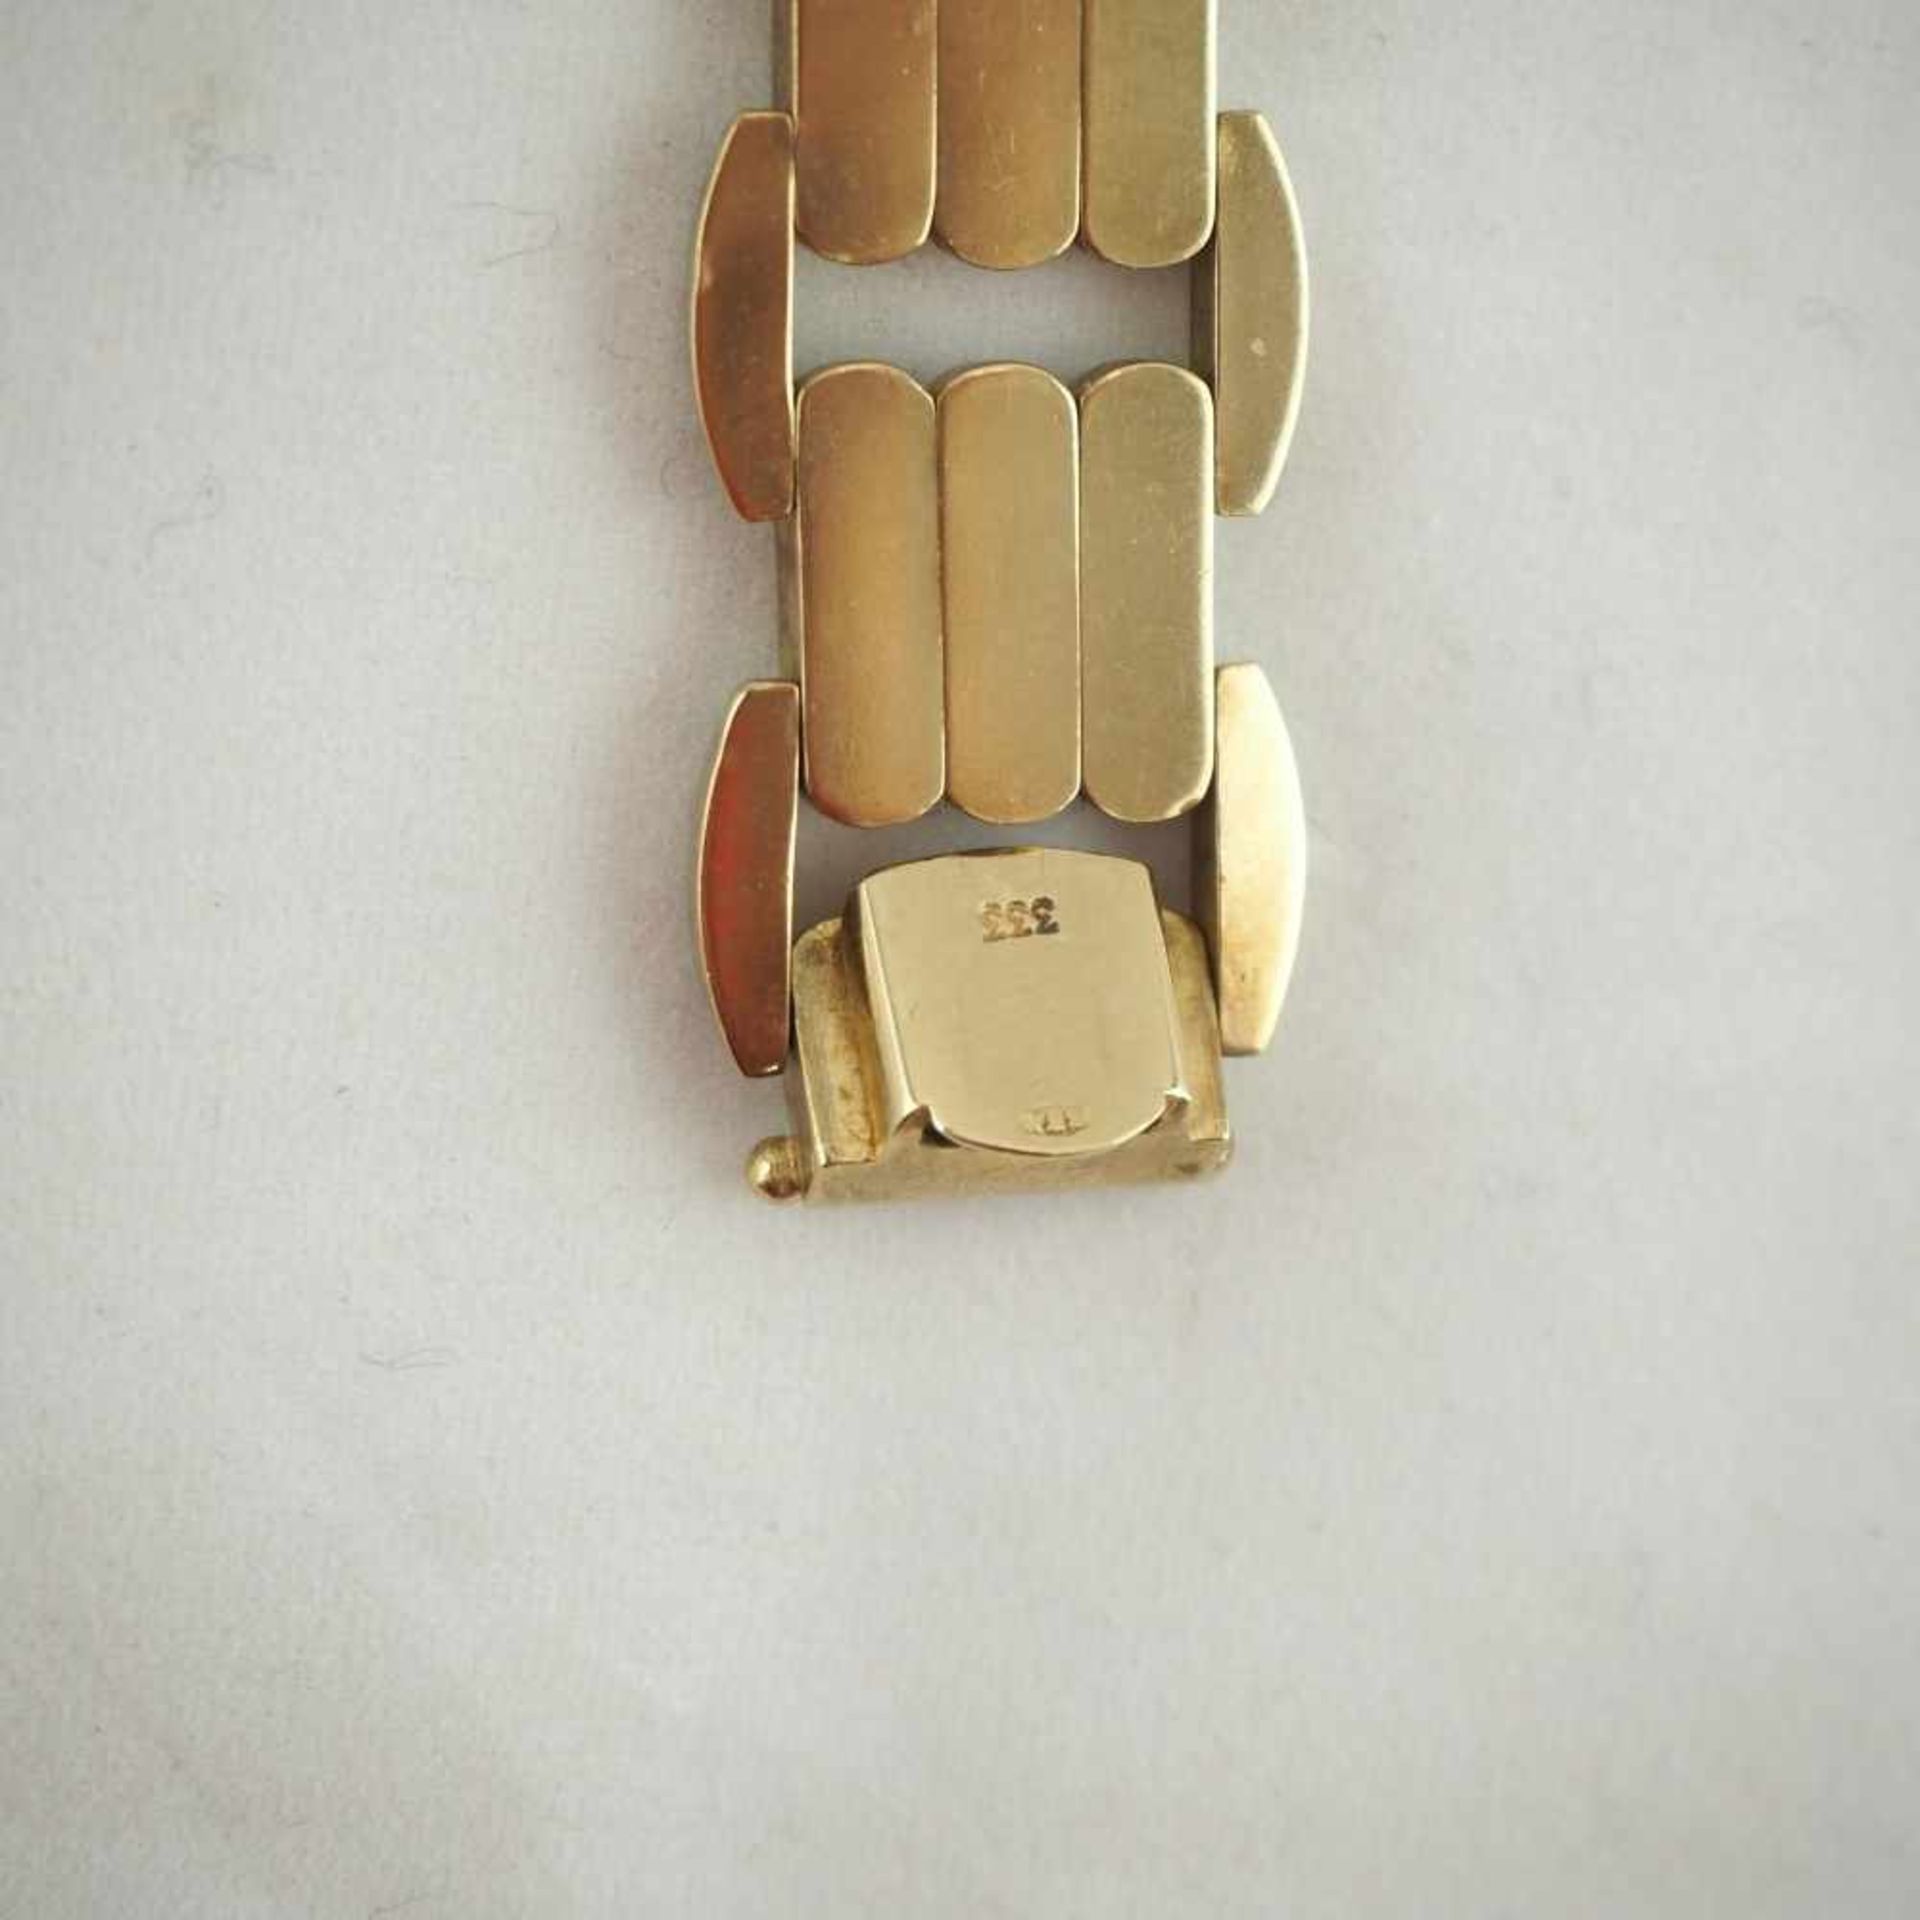 Armband, 8kt Gold30,5g Gesamtgewicht, 19cm Gesamtlänge, 333er Goldstempel am Verschluss, gebrauchtes - Bild 3 aus 3